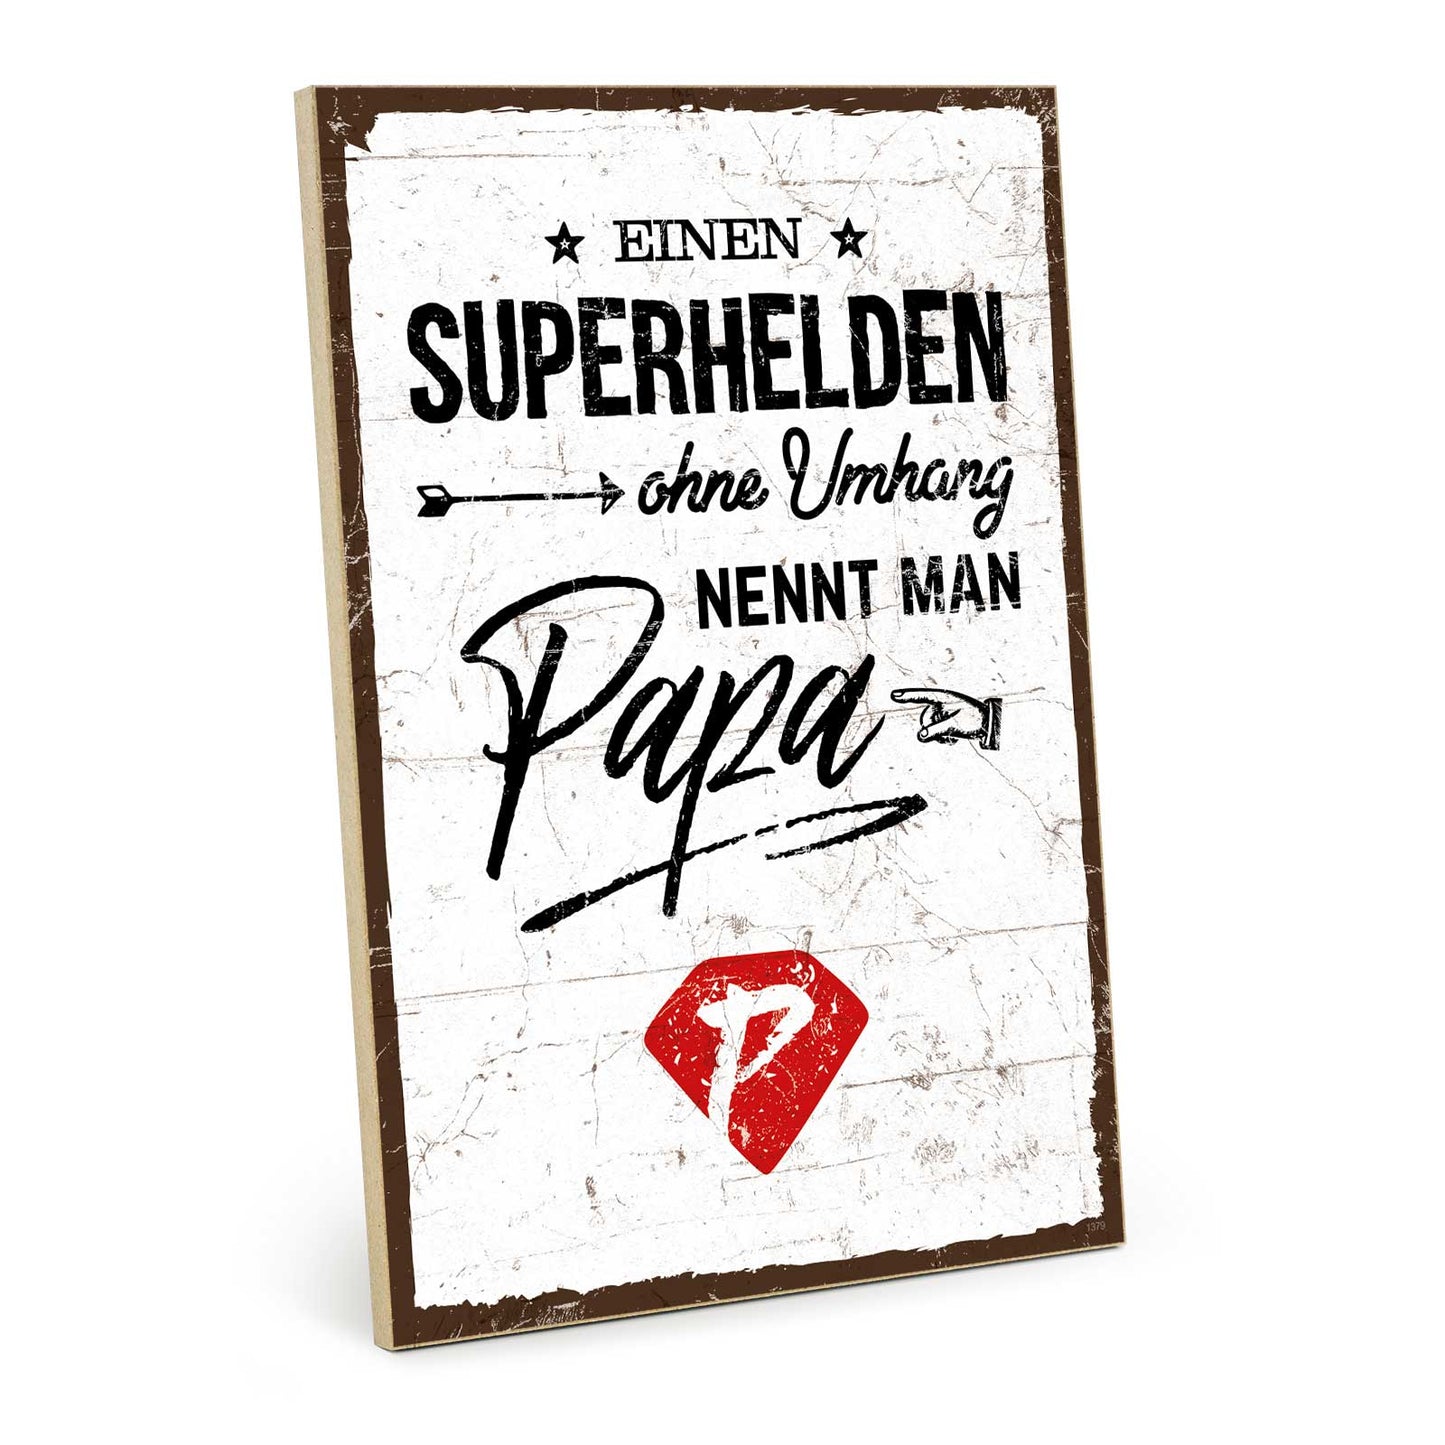 Holzschild mit Spruch - Papa Superheld – HS-GH-01379